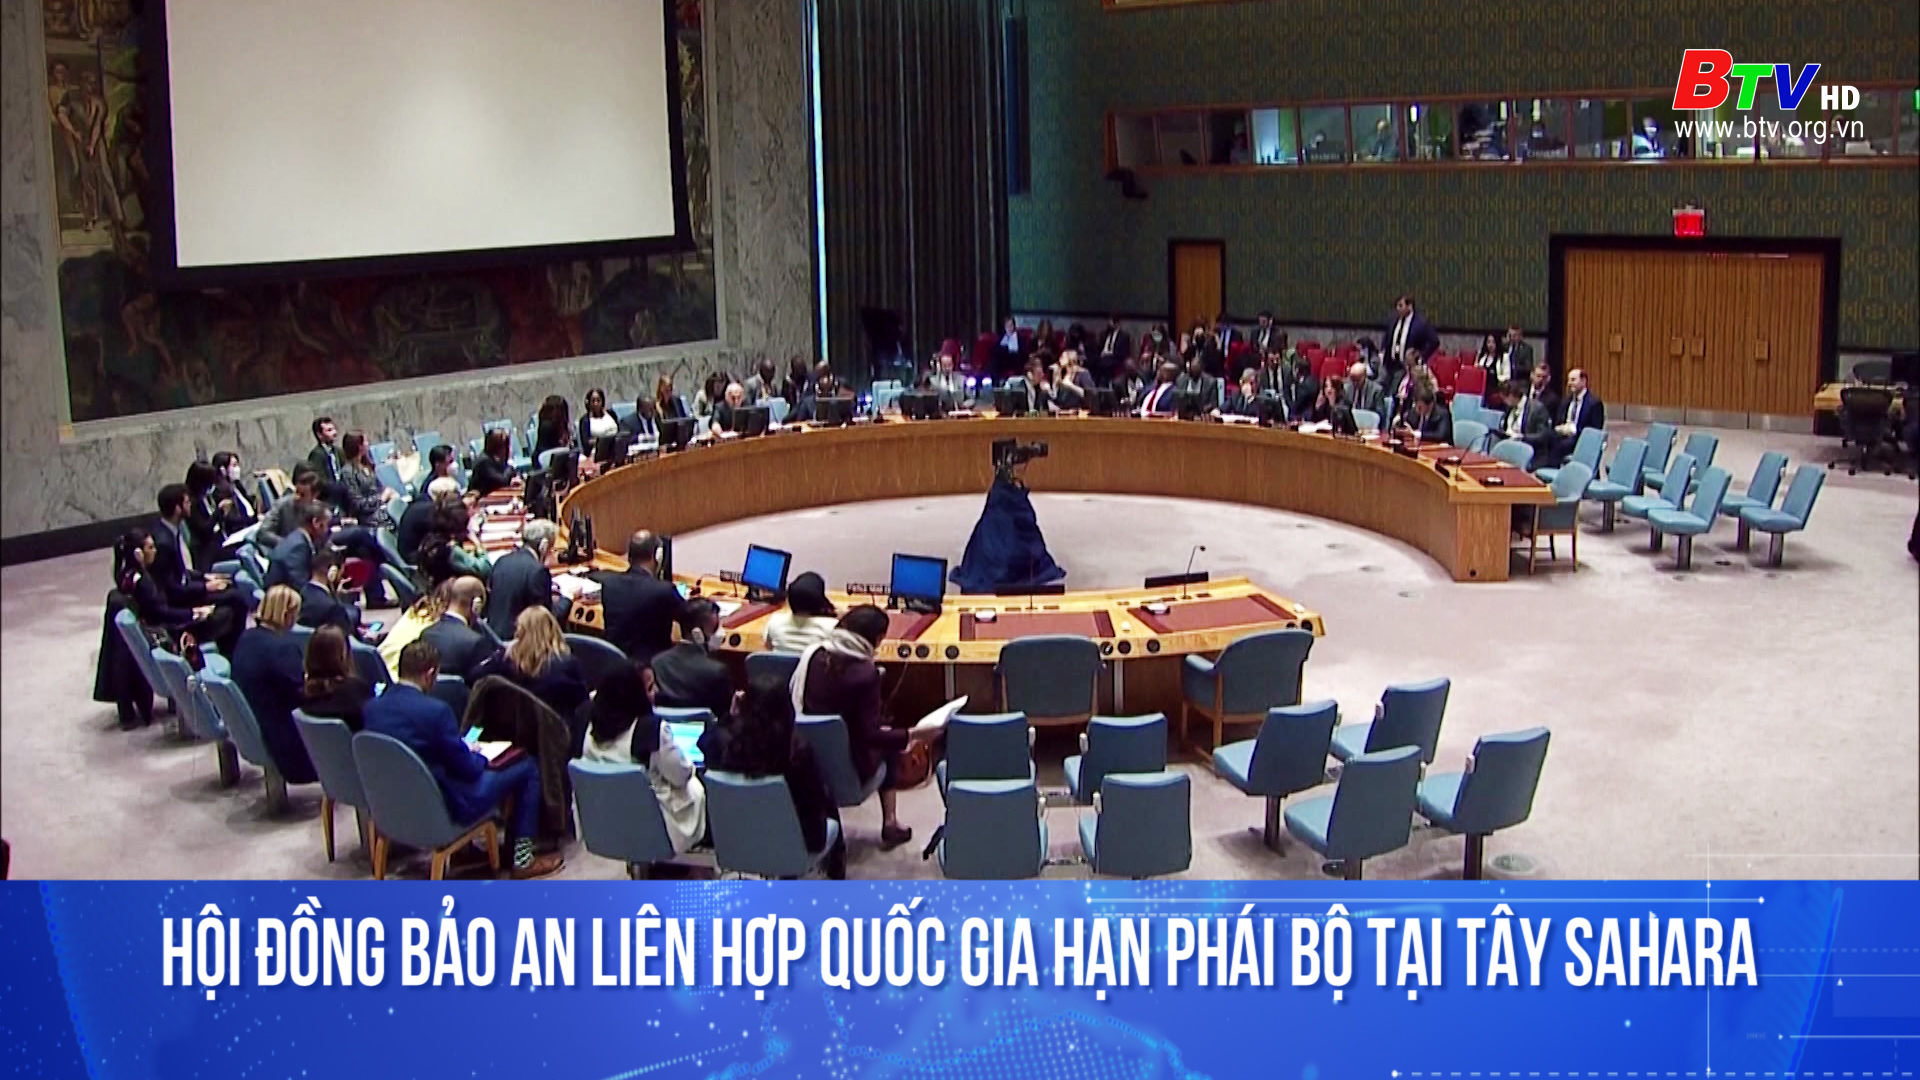 Hội đồng Bảo an Liên hợp quốc gia hạn Phái bộ tại Tây Sahara